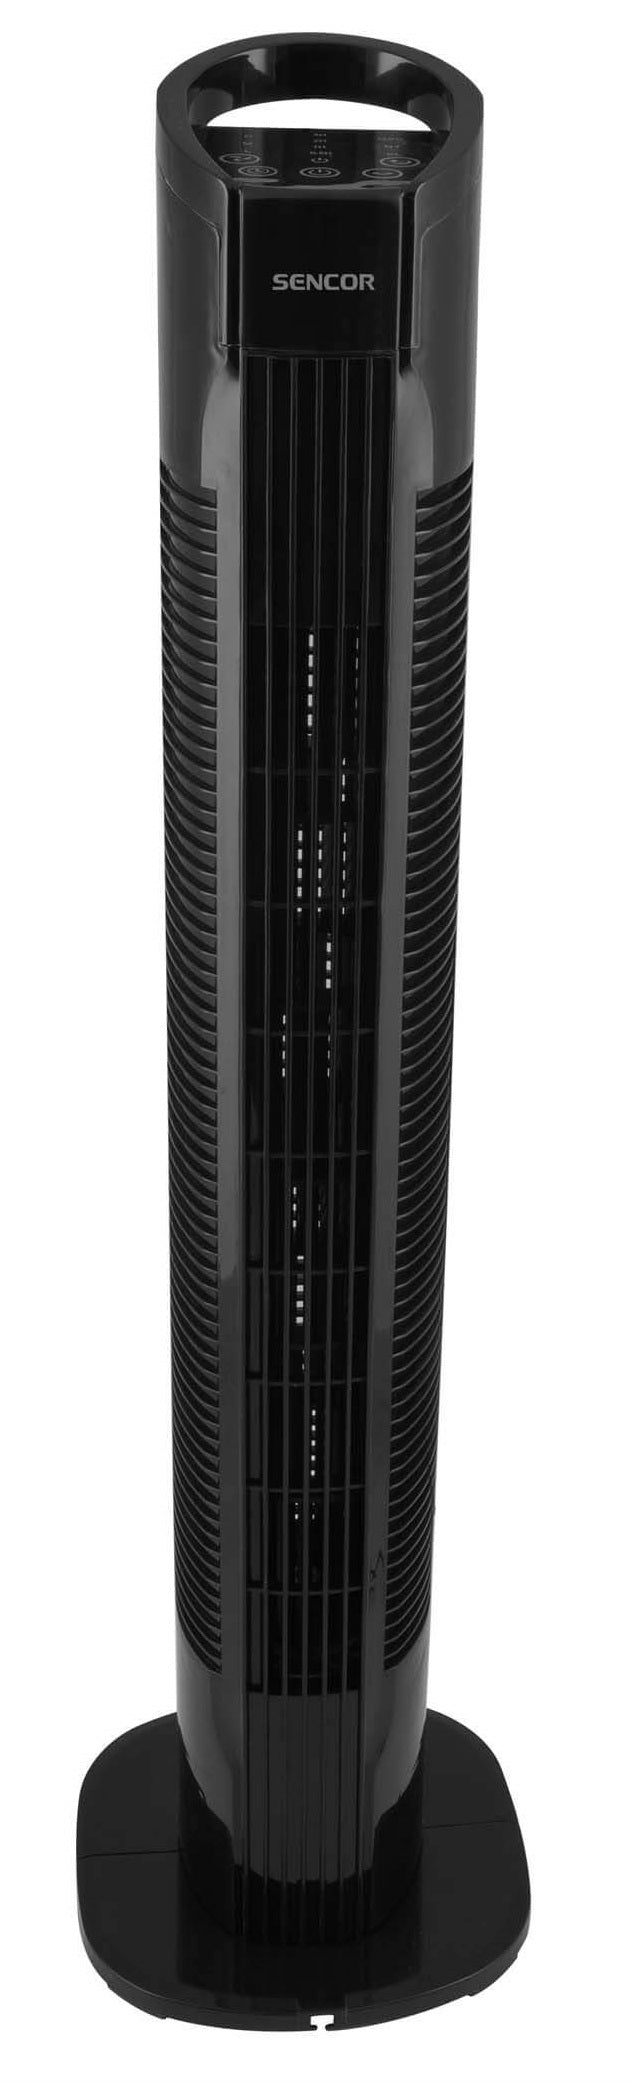 Sencor Tower Fan SFT 3113BK